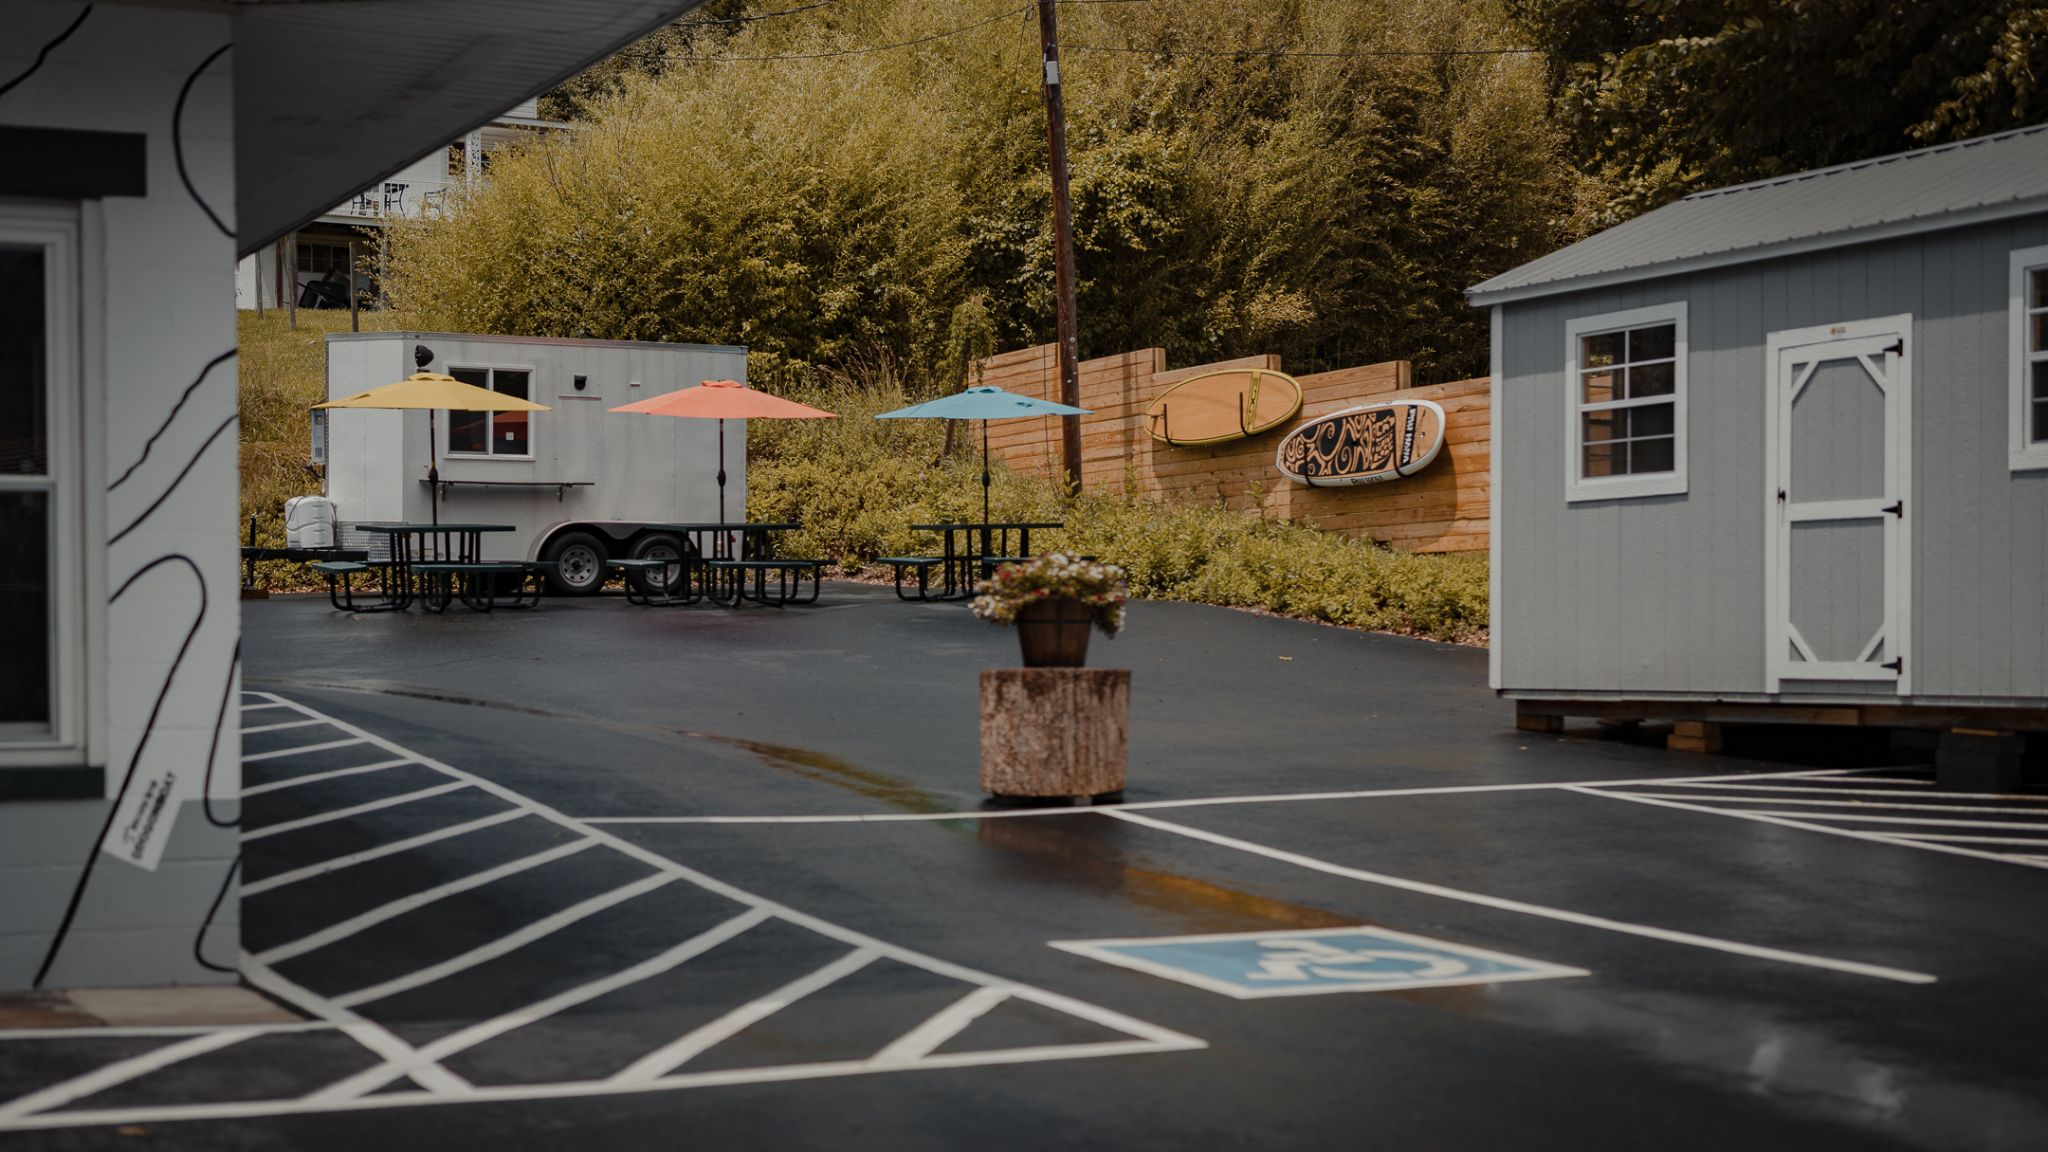 Trail Depot: Berkeley Springs’ First Outdoor Shop